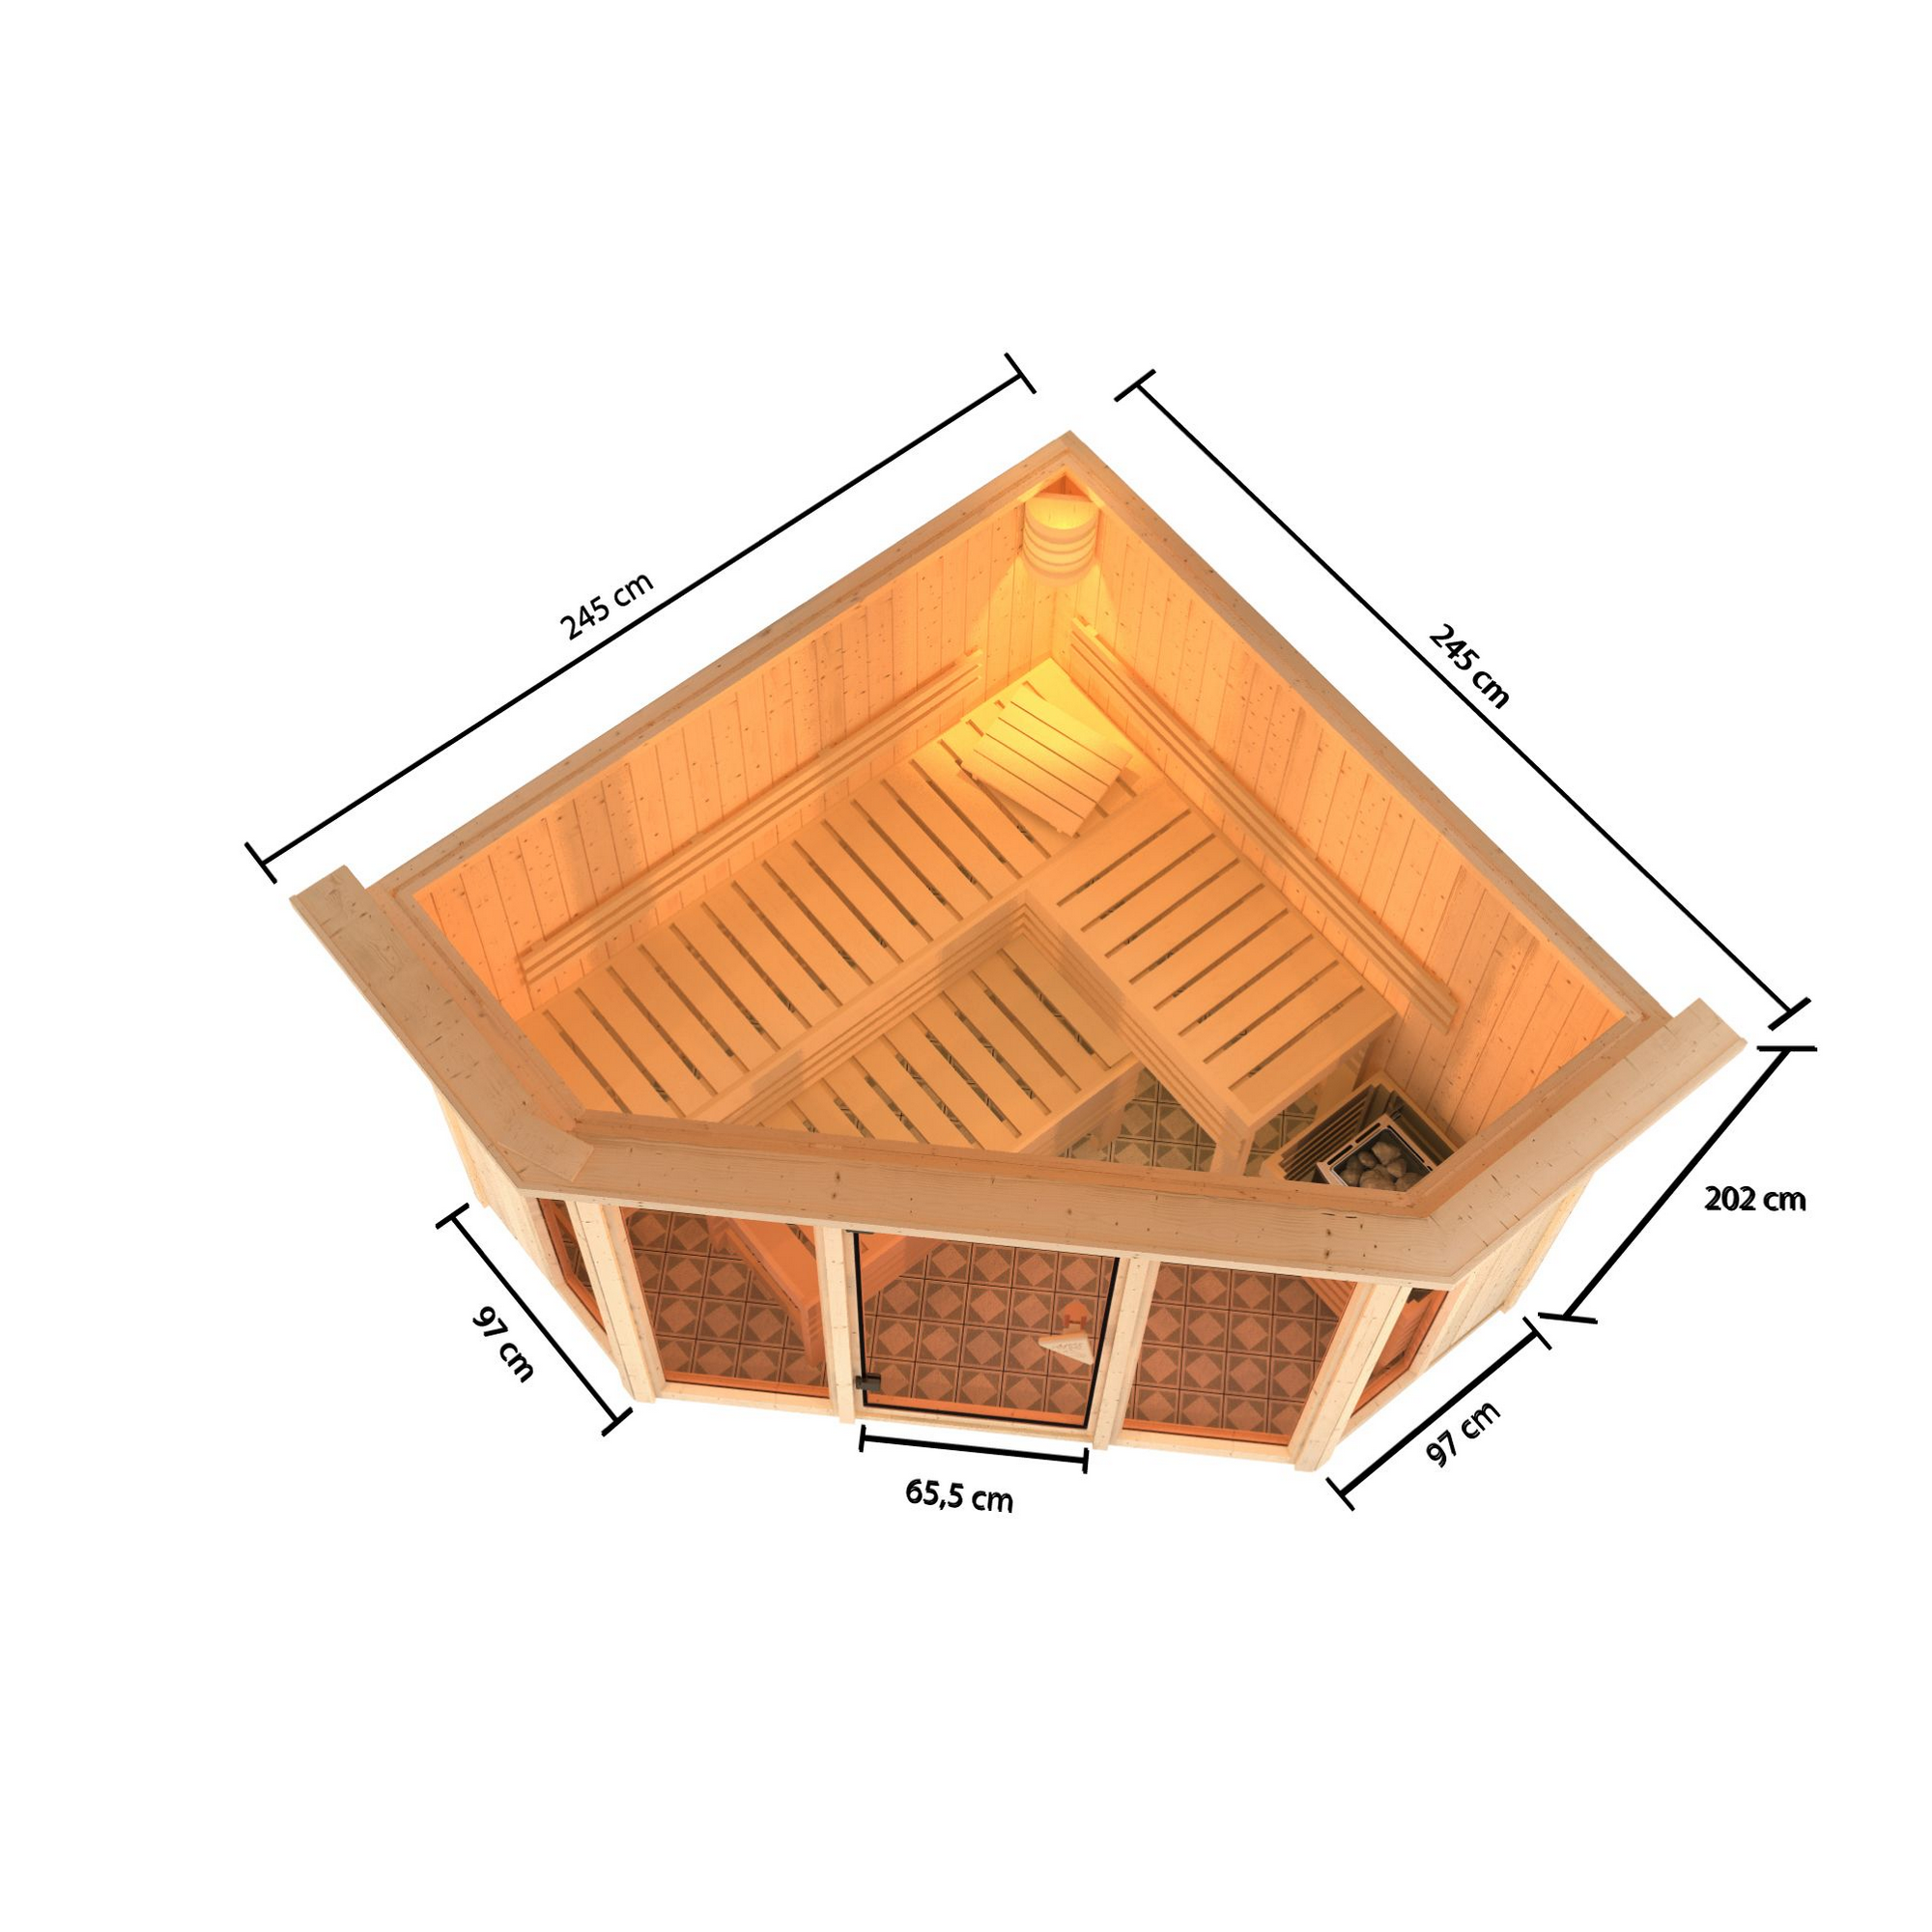 Sauna 'Aurelia 2' naturbelassen mit Kranz und bronzierter Tür 9 kW Ofen integrierte Steuerung 245 x 245 x 202 cm + product picture